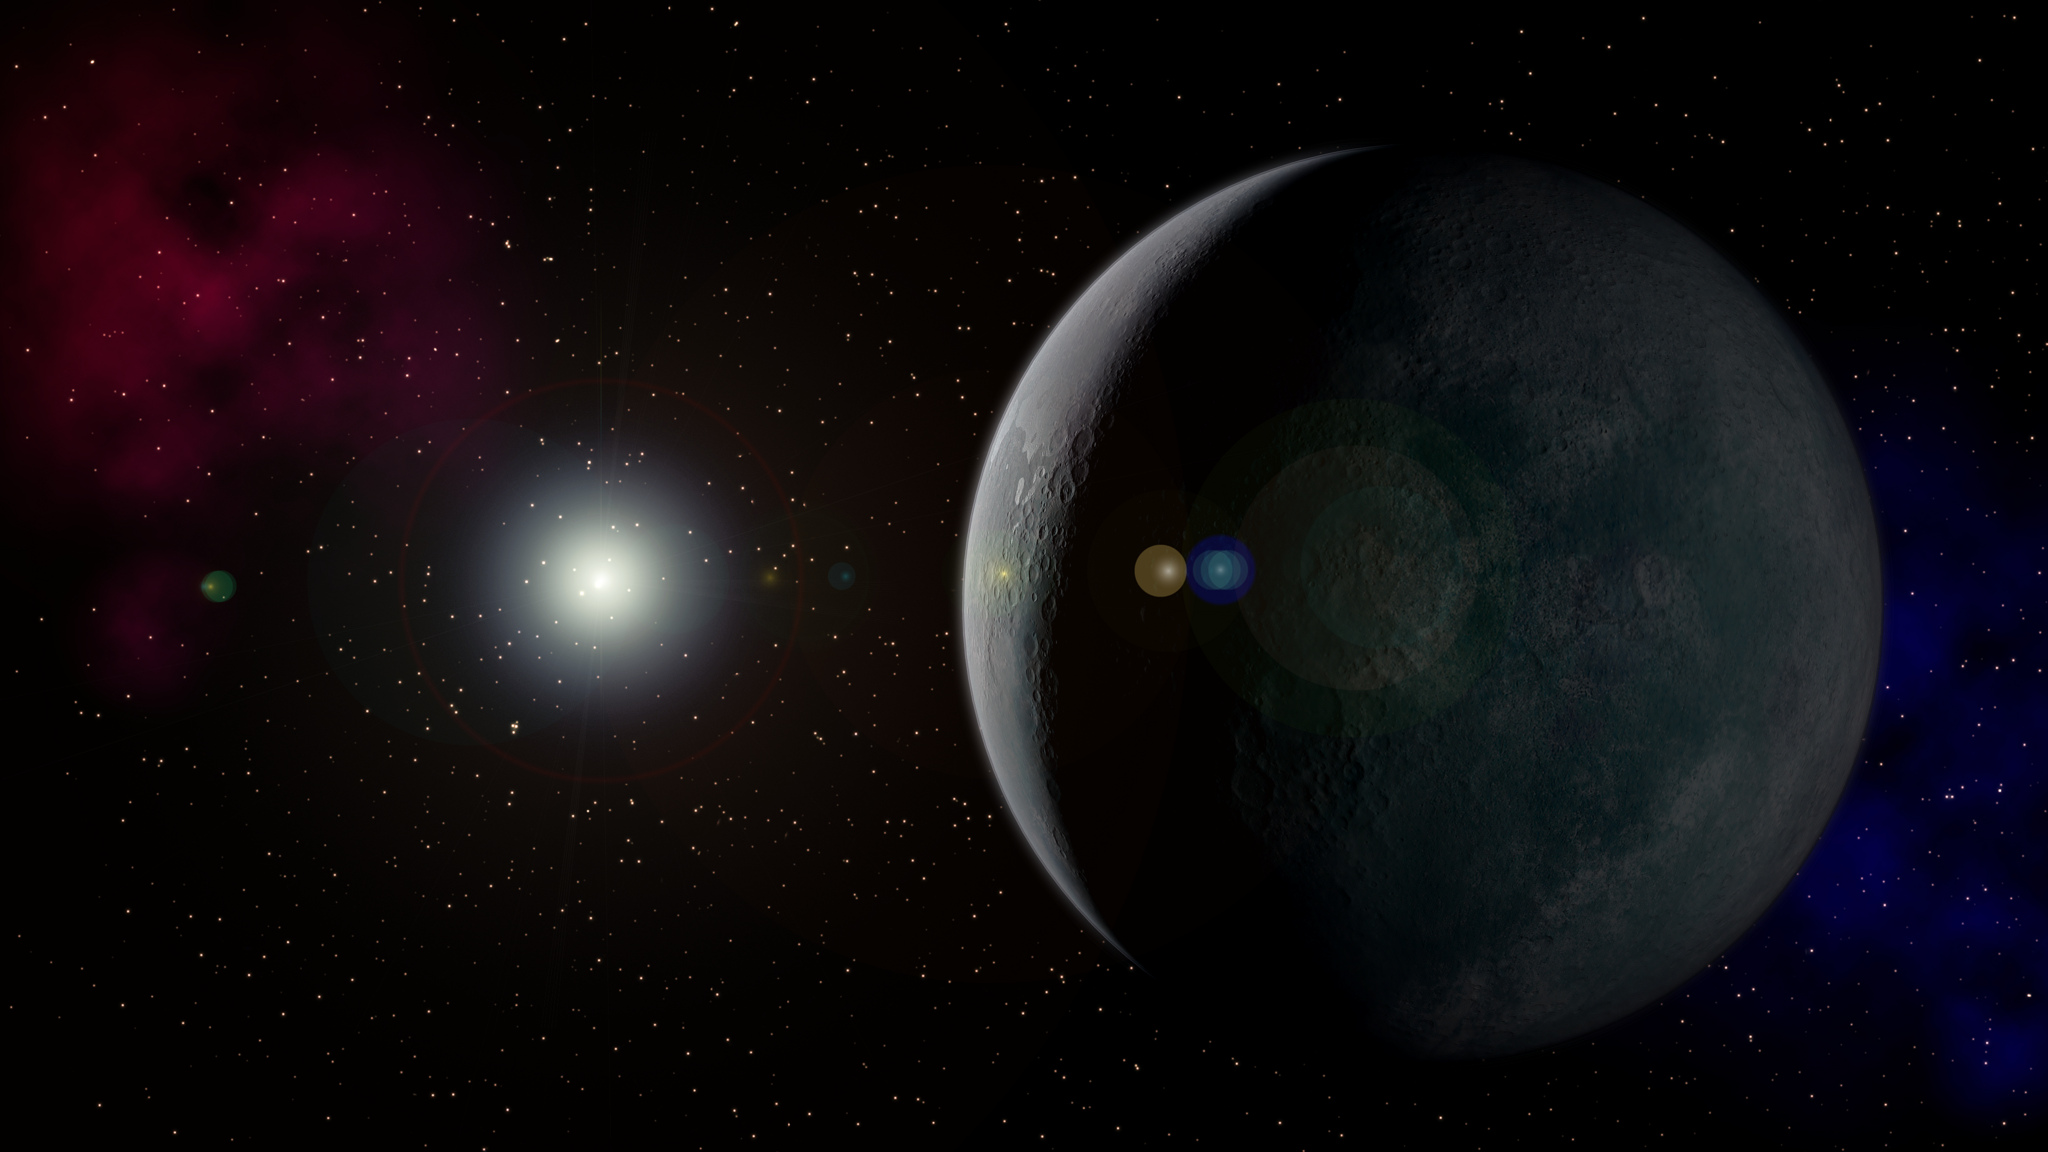 Des chercheurs pensent trouver une preuve supplémentaire de l’existence d’une neuvième planète aux confins de notre Système solaire en étudiant la trajectoire des comètes observées au Moyen-Âge et dépeintes dans les tapisseries. ©️ Kevin Gill/Elizabeth Gill, Flickr